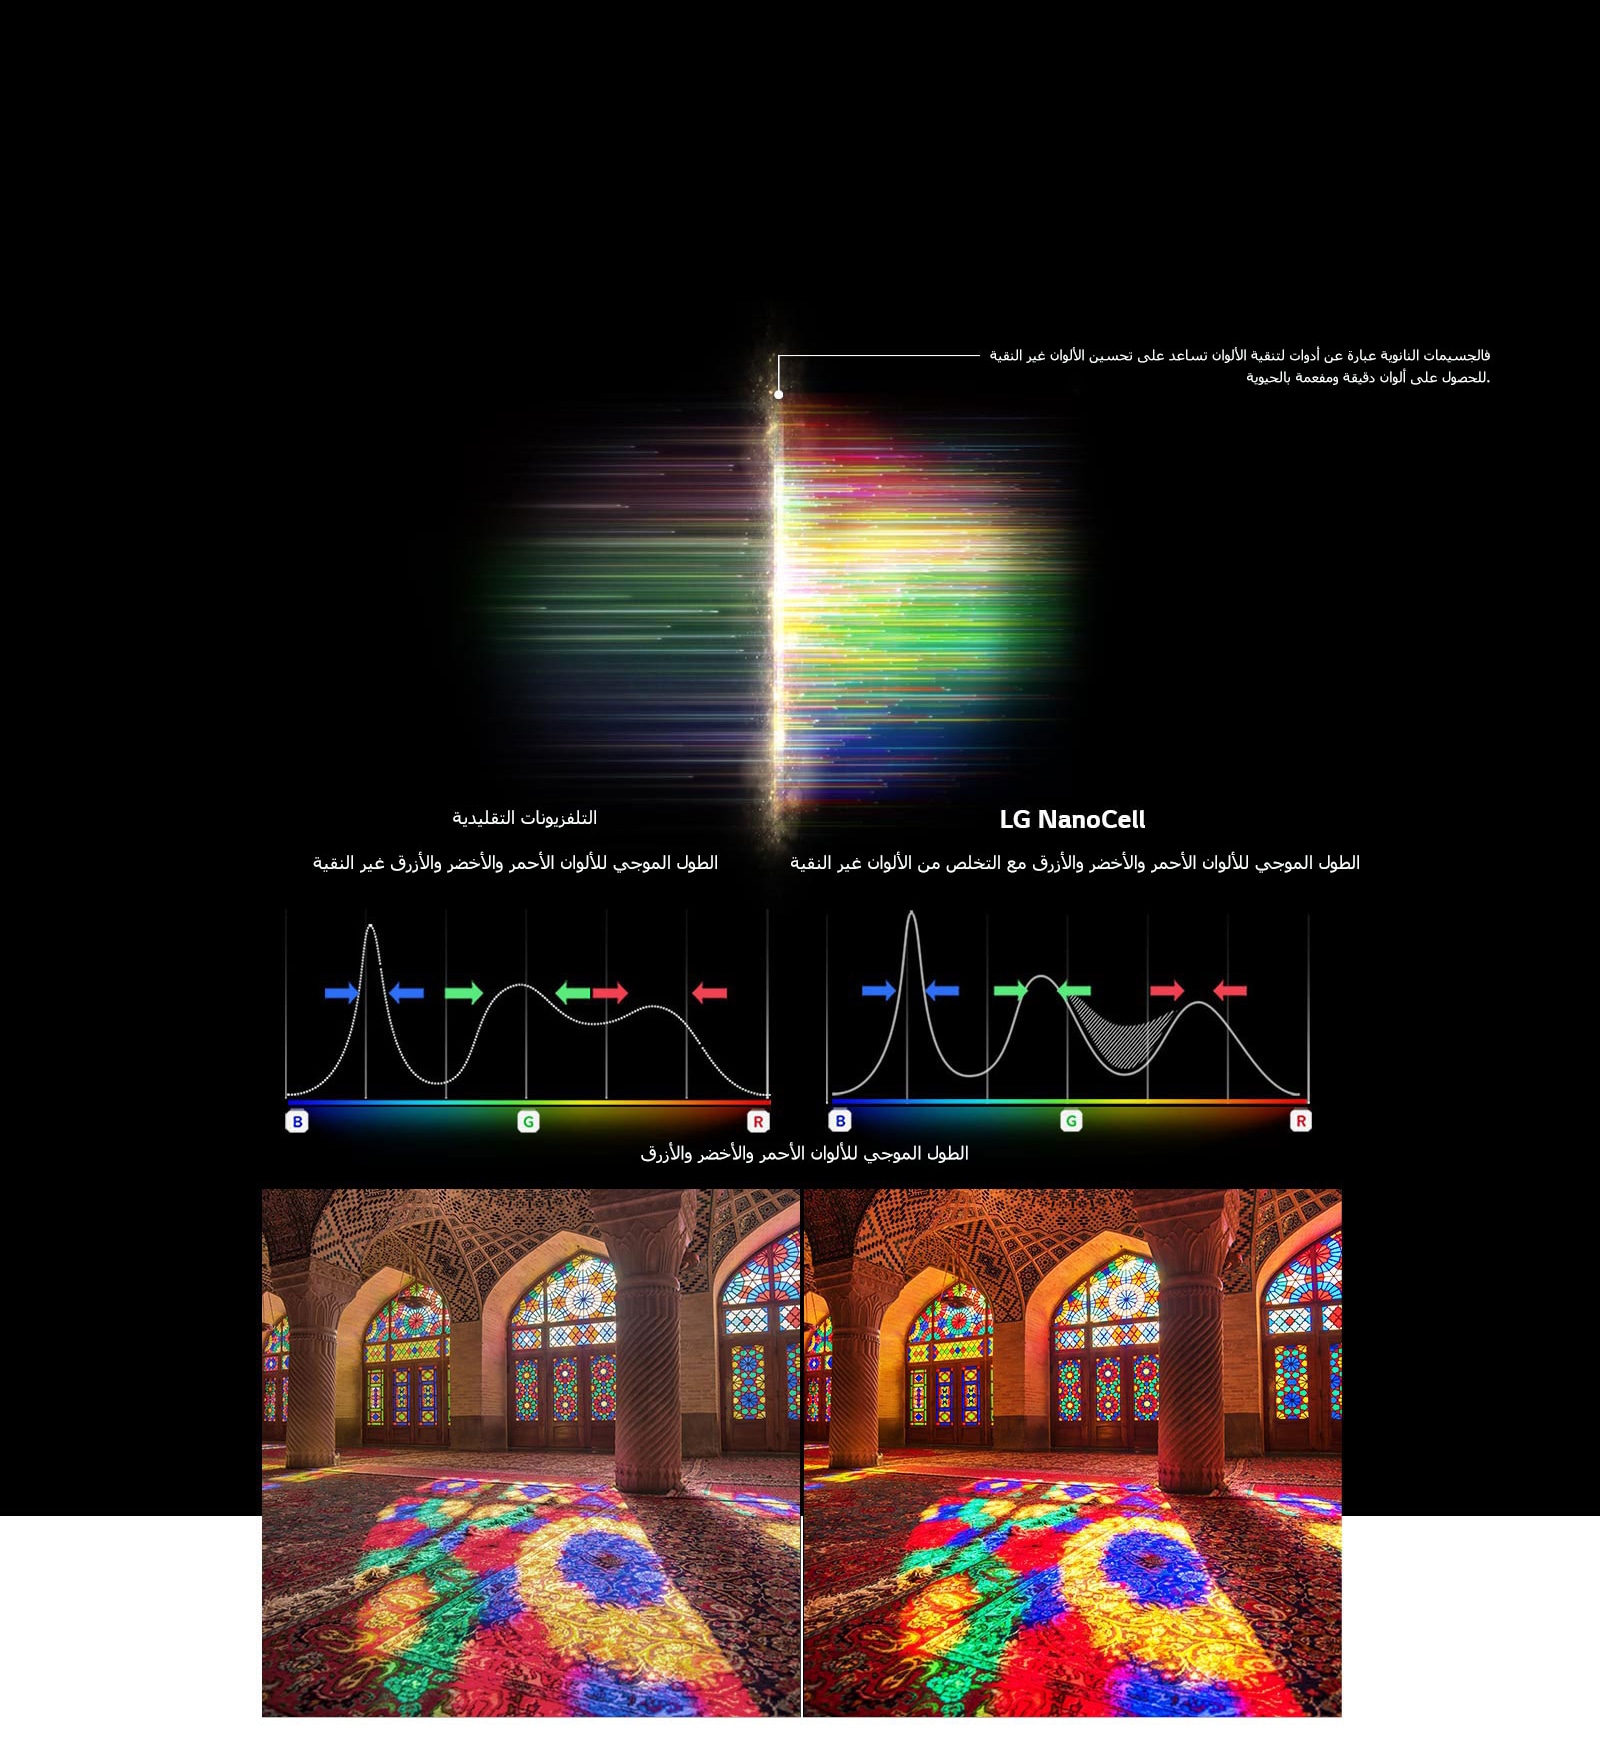 الرسم البياني للطيف RGB الذي يوضح تصفية الألوان الباهتة والصور التي تقارن نقاء الألوان بين التقنية التقليدية و NanoCell Tech